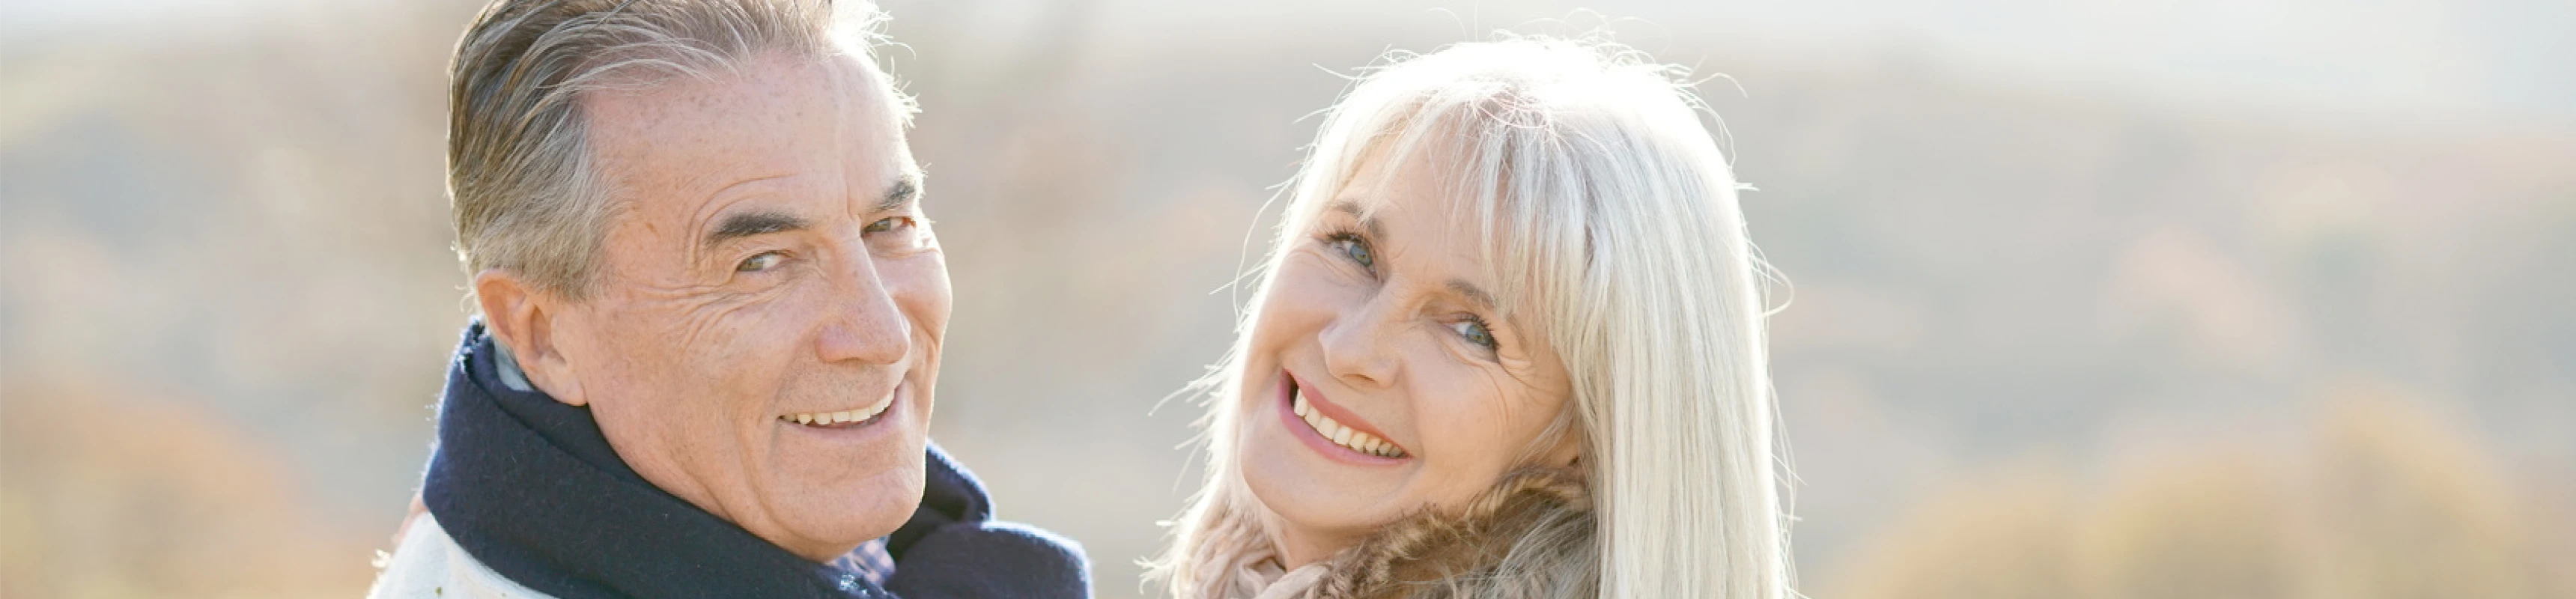 L'impact du vieillissement sur la santé bucco-dentaire